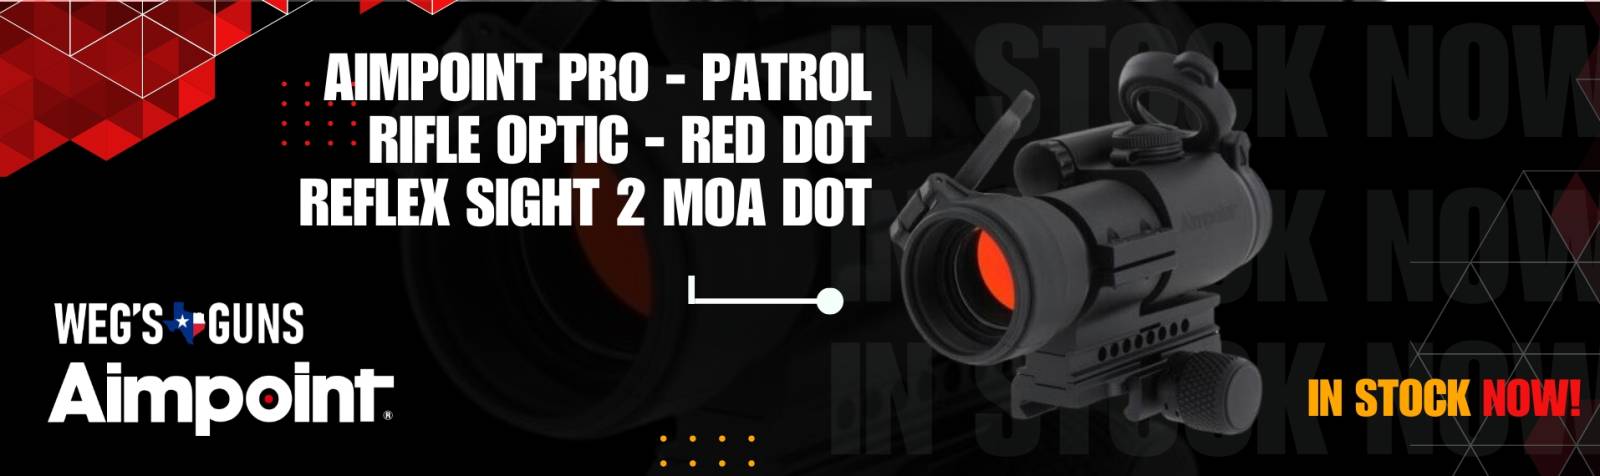 4Aimpoint PRO - Patrol Rifle Optic - Red Dot Reflex Sight 2 MOA Dot